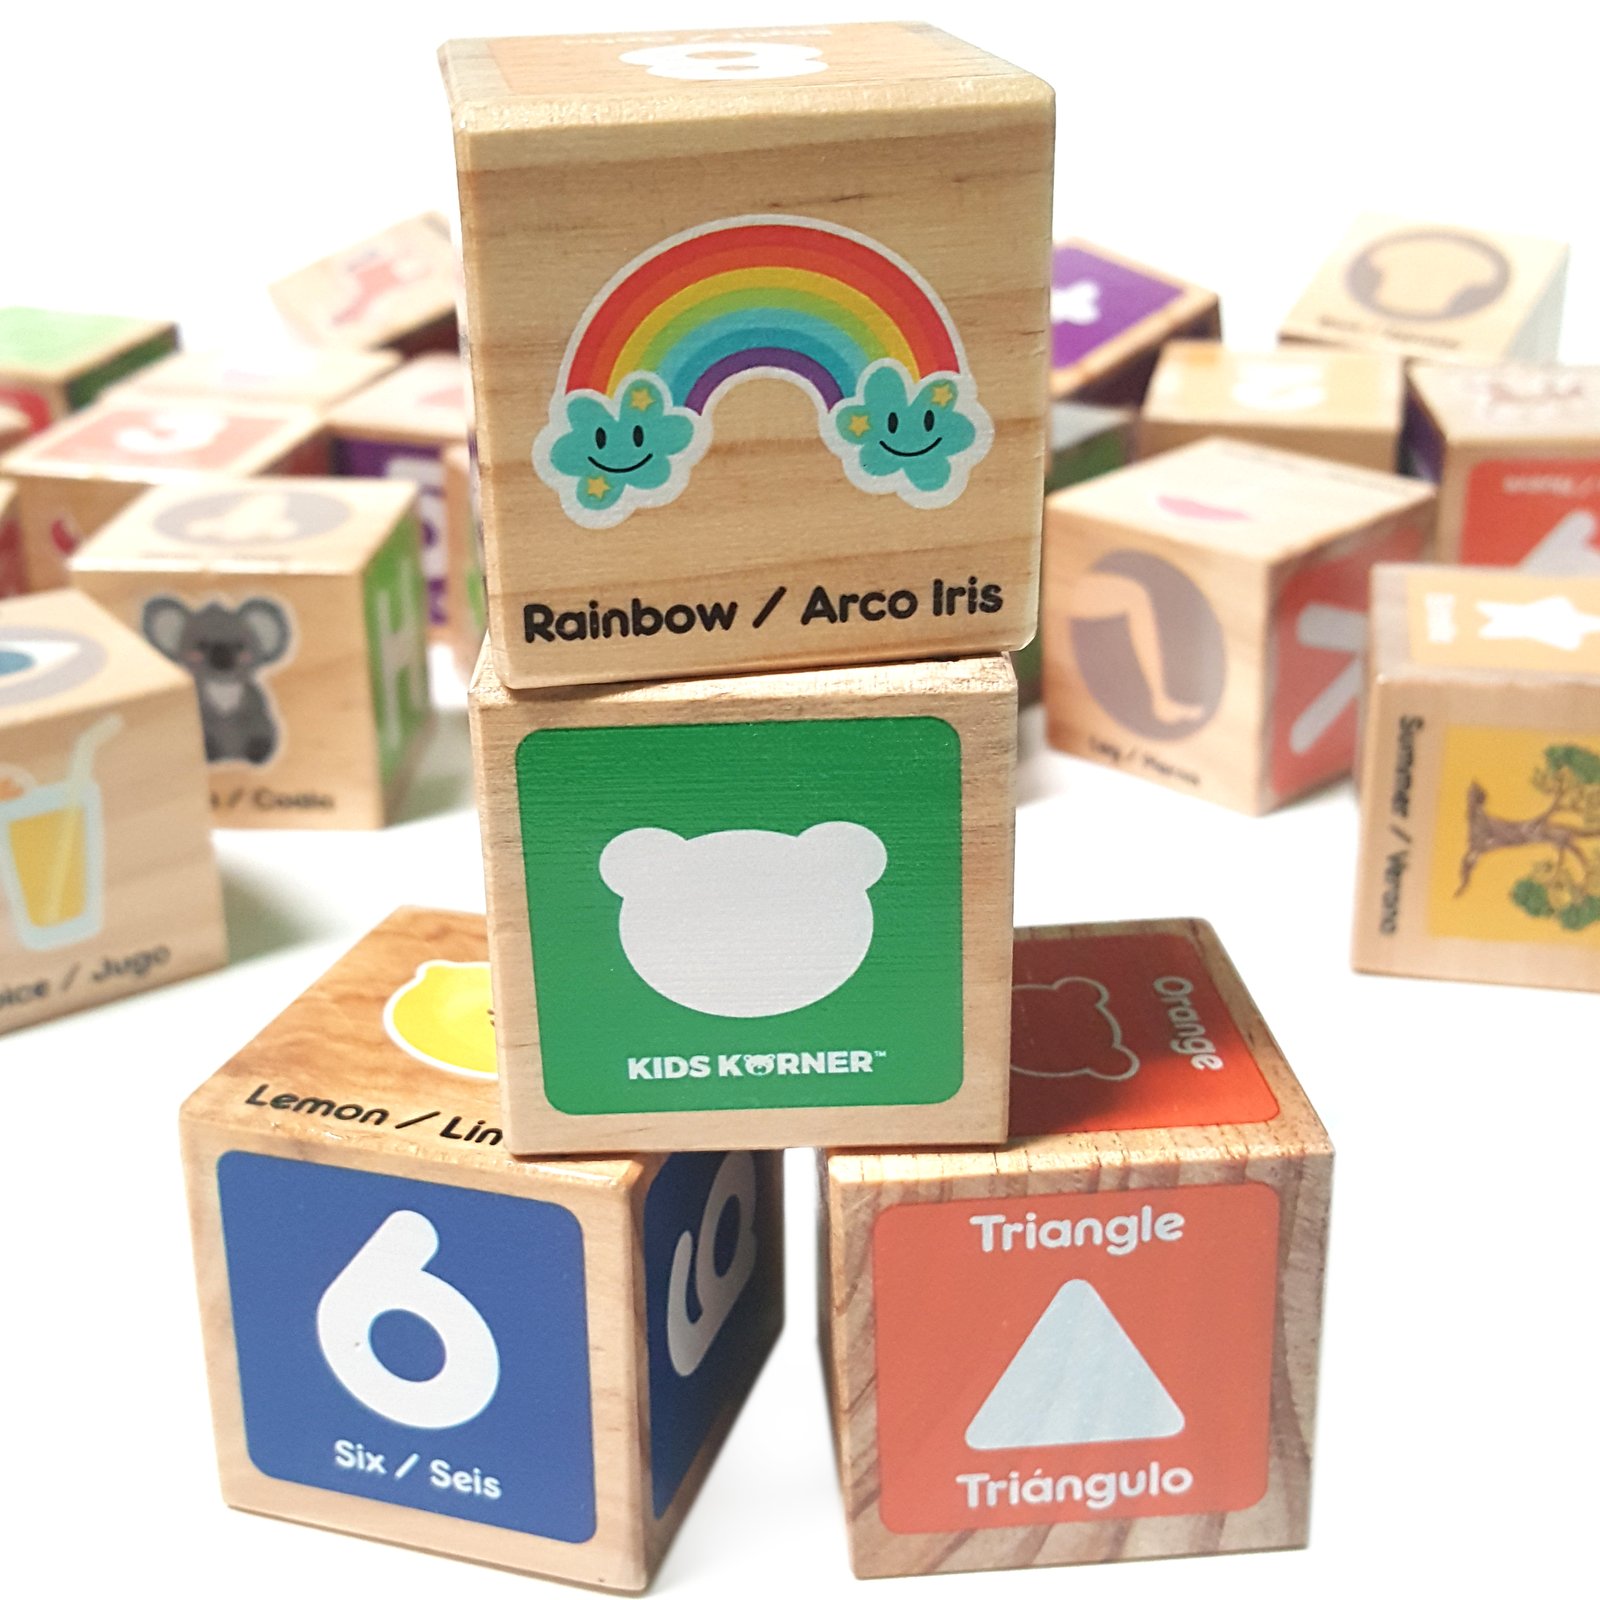 wooden blocks for kids